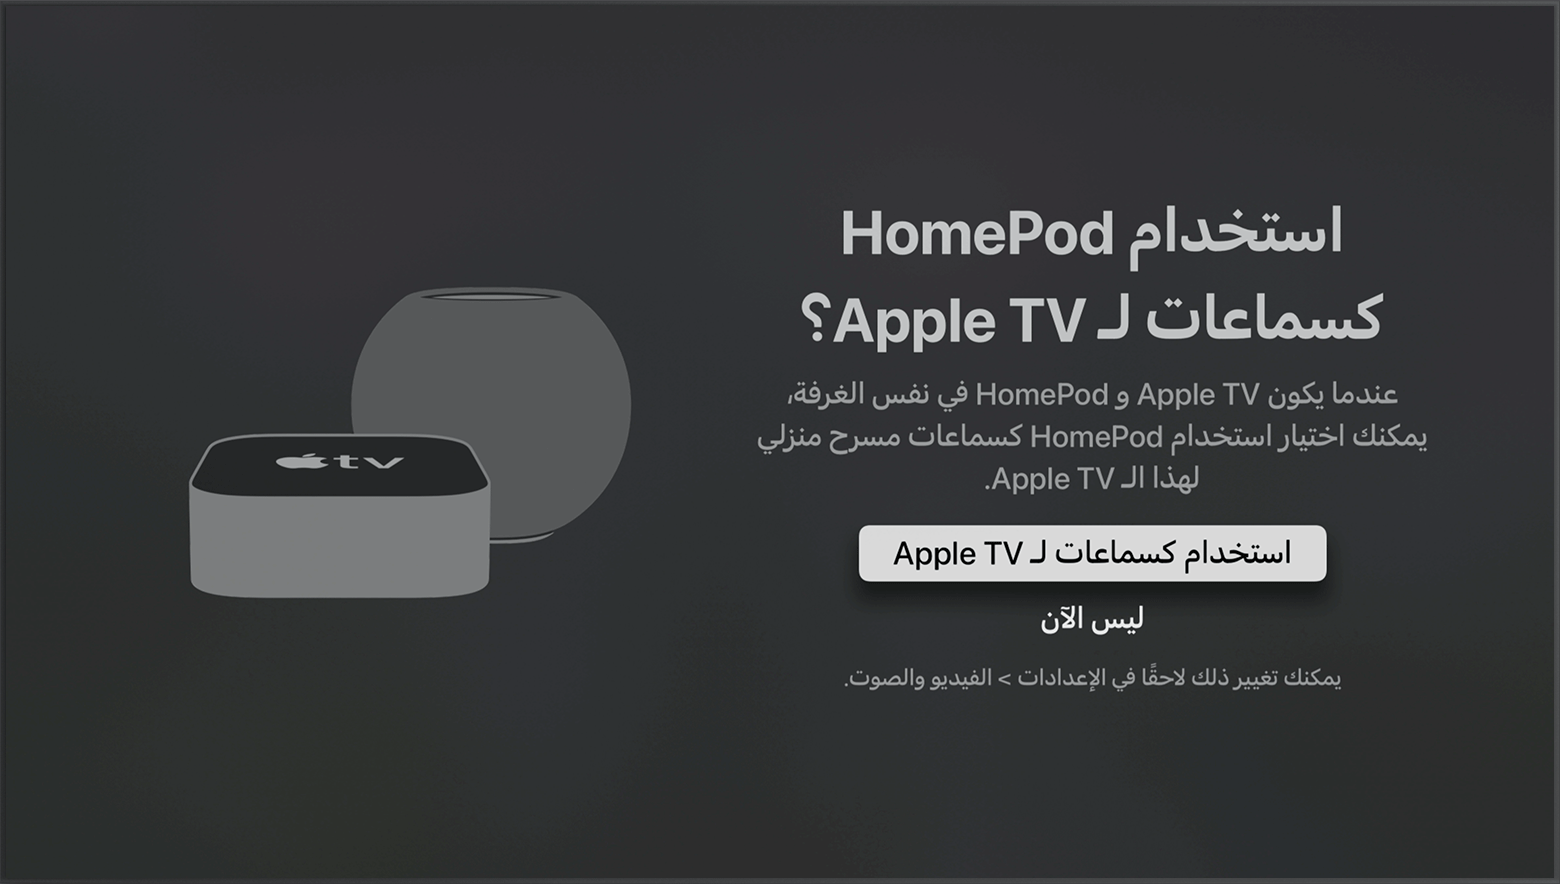 لقطة شاشة لنظام التشغيل tvOS تعرض رسالة المطالبة باستخدام سماعات HomePod كسماعات لـ Apple TV.